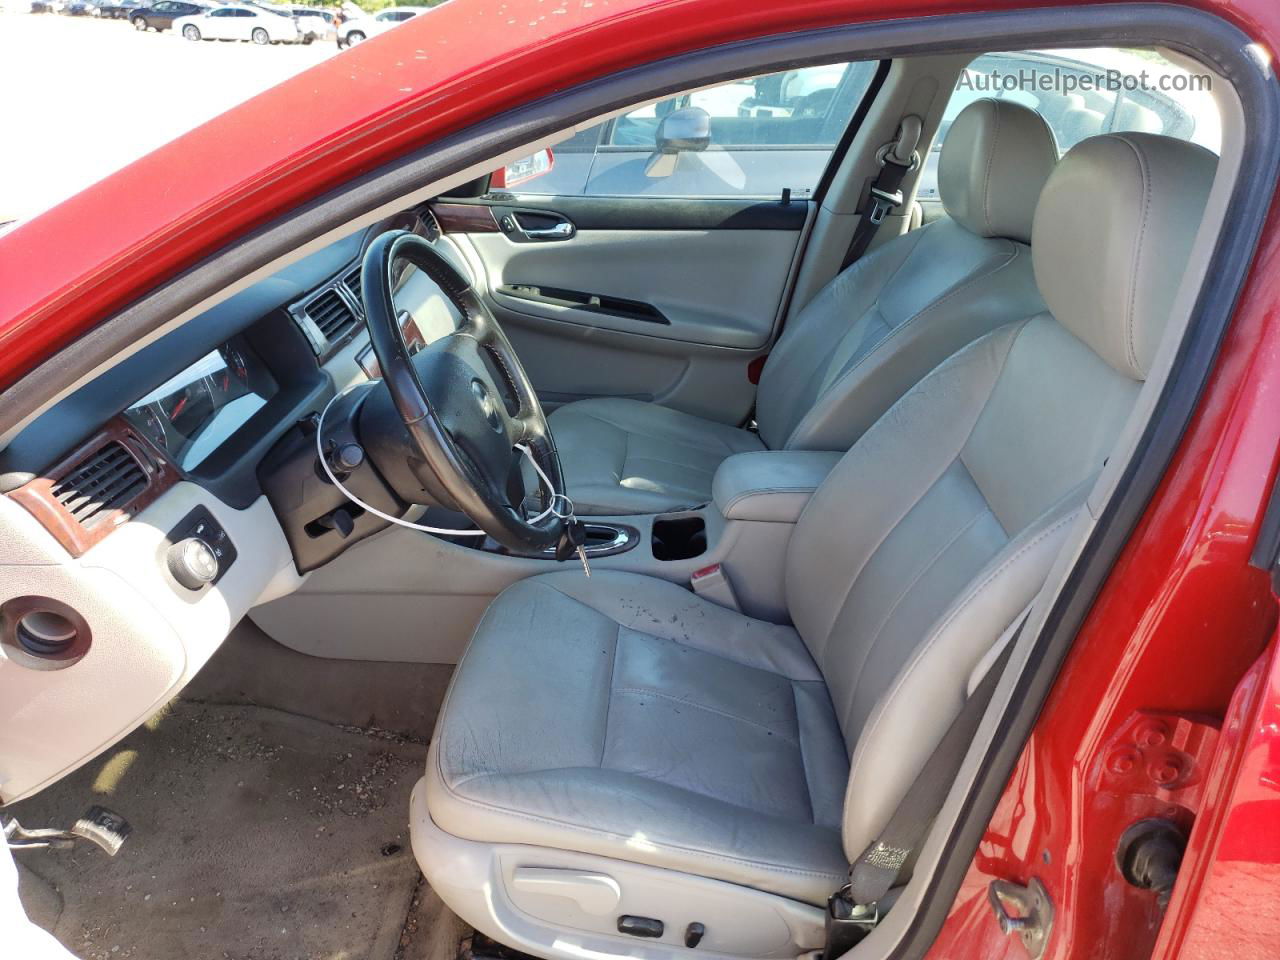 2009 Chevrolet Impala Ltz Red vin: 2G1WU57M391315230